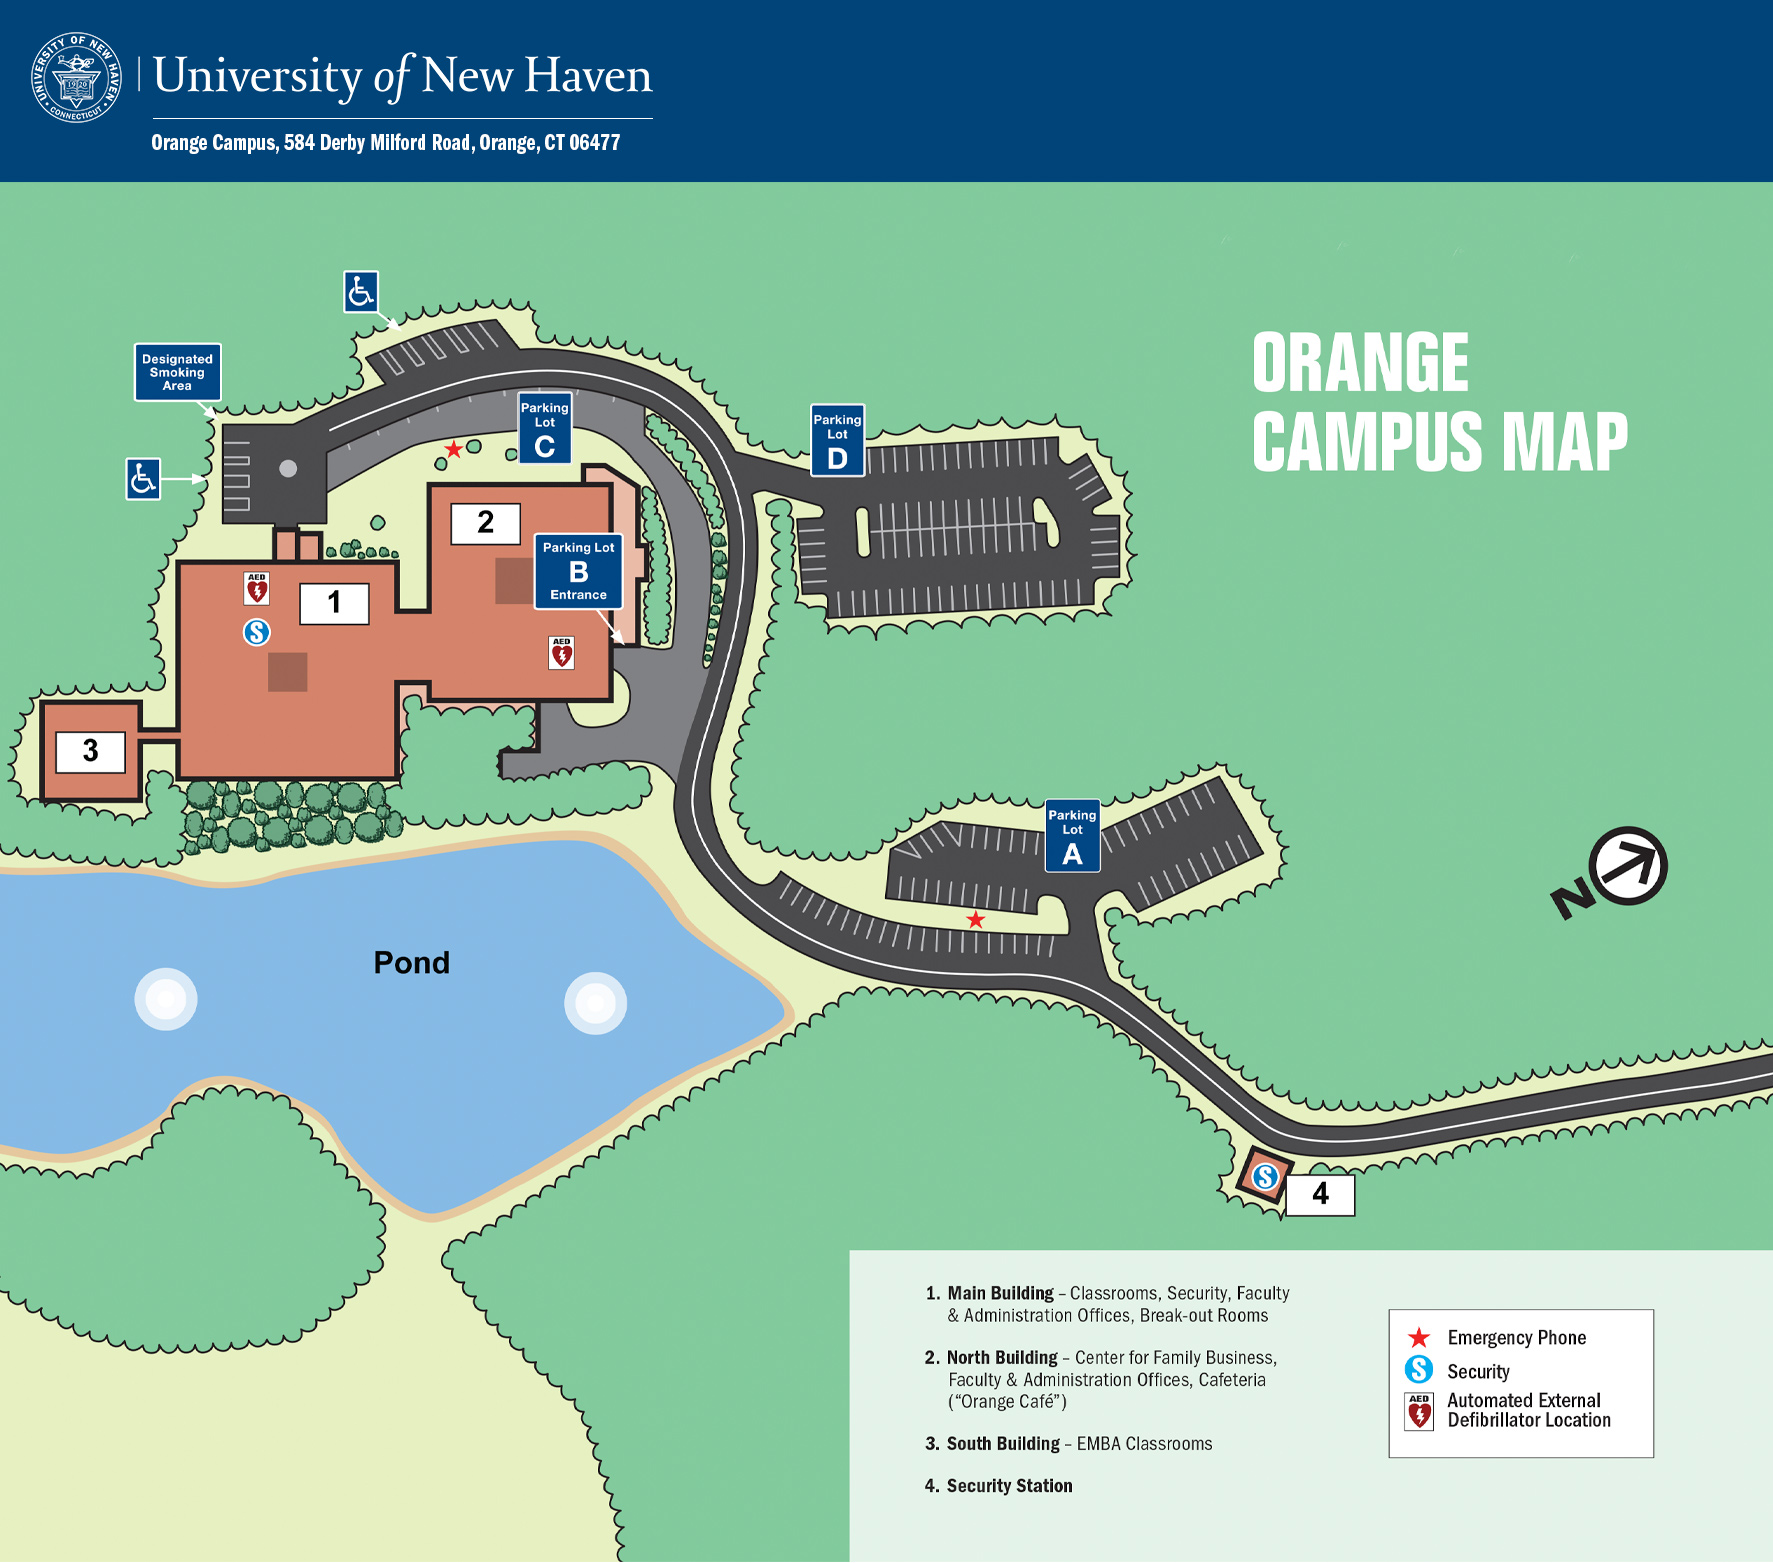 Orange Campus Map